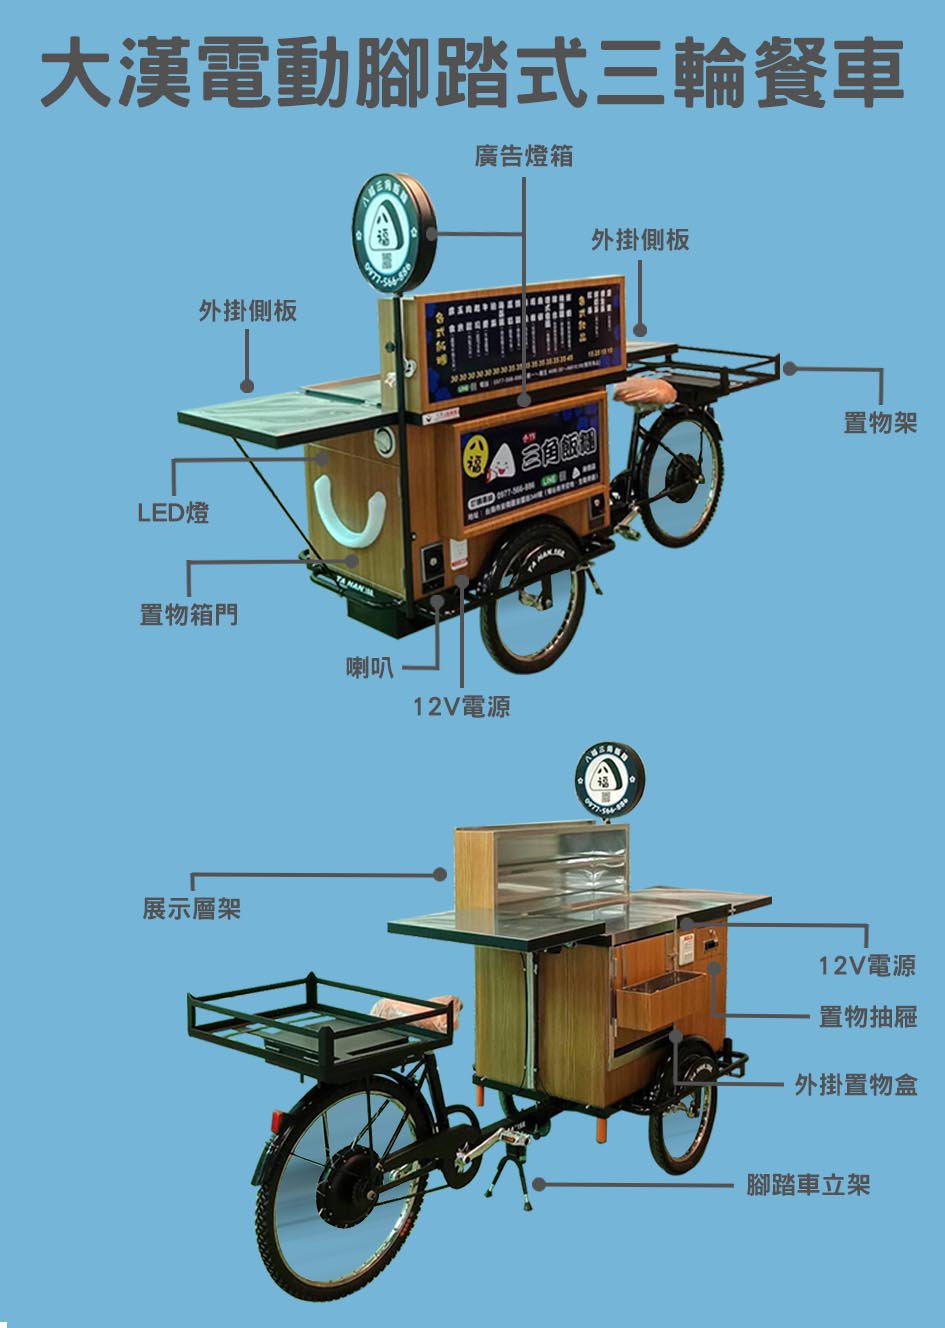 電動腳踏式三輪餐車功能說明表